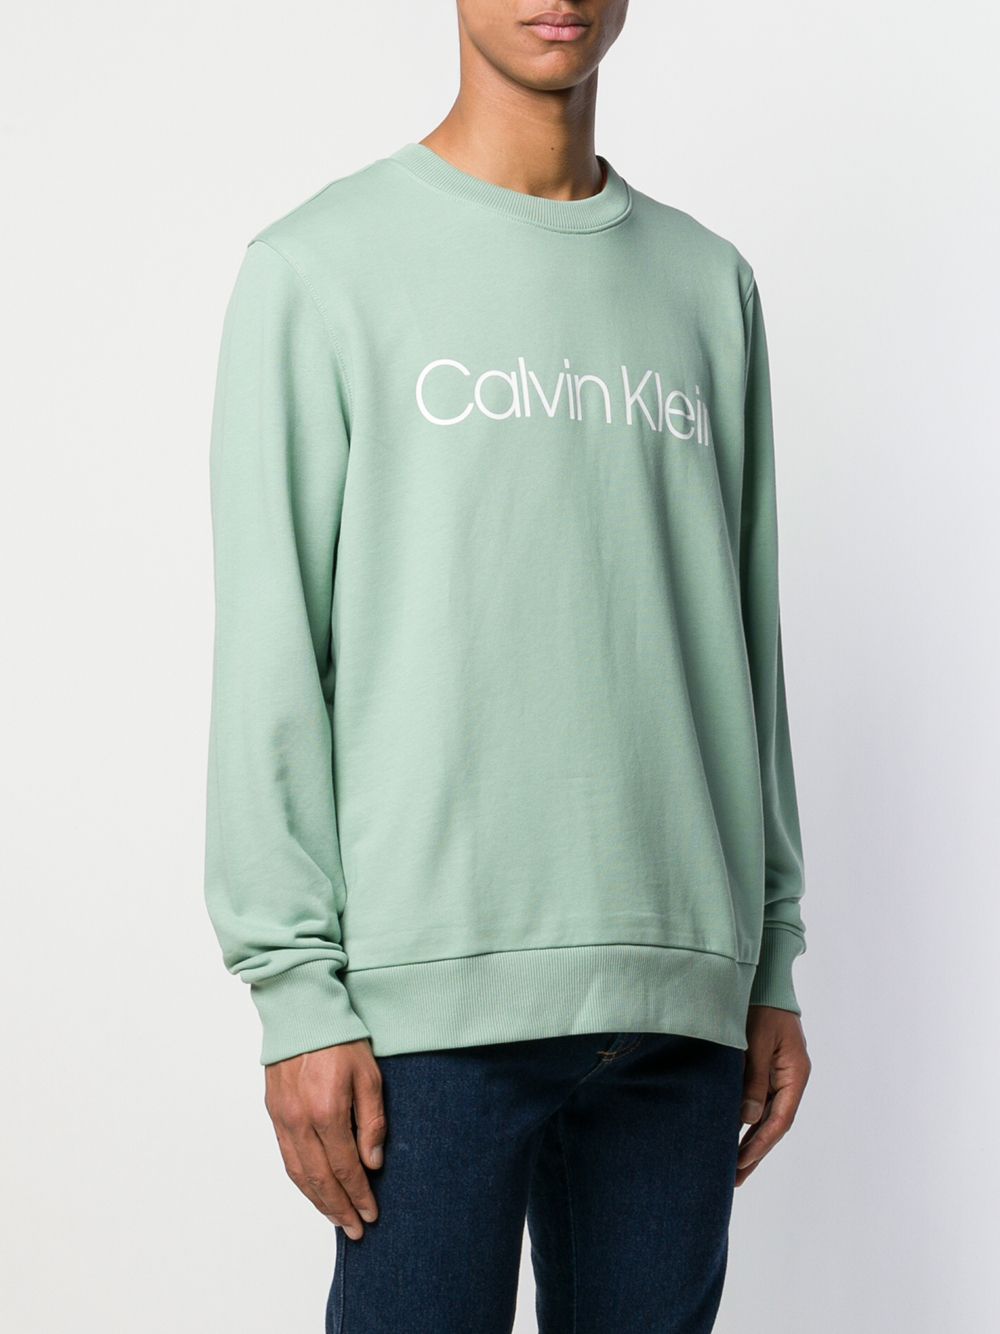 фото Calvin Klein свитер с логотипом